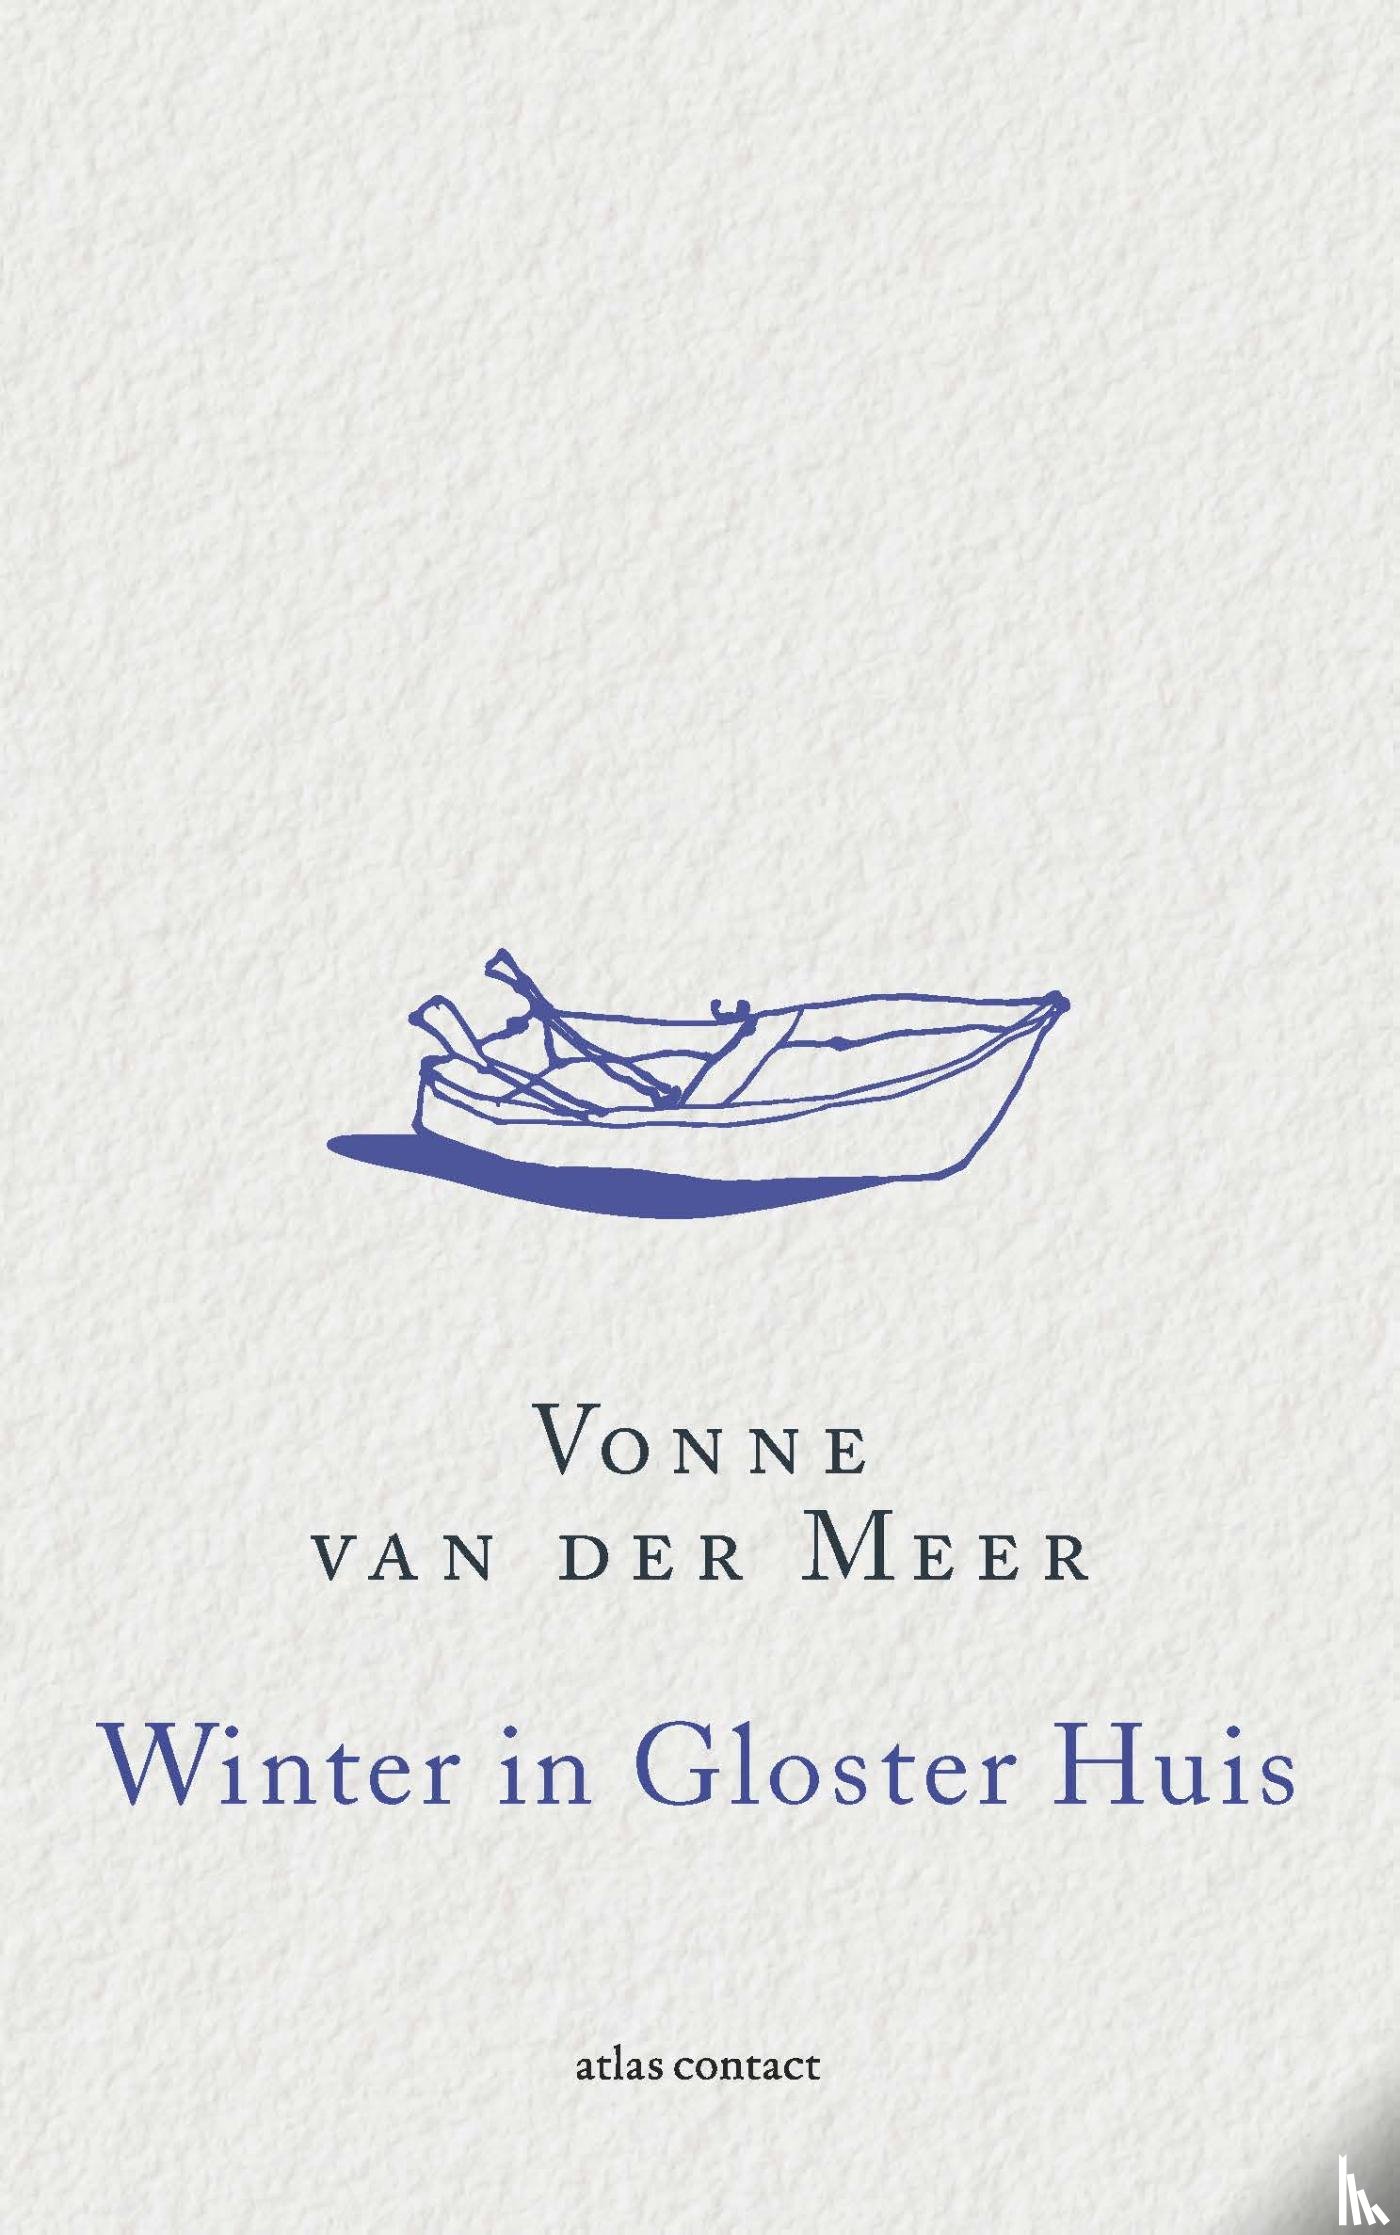 Meer, Vonne van der - Winter in Gloster Huis